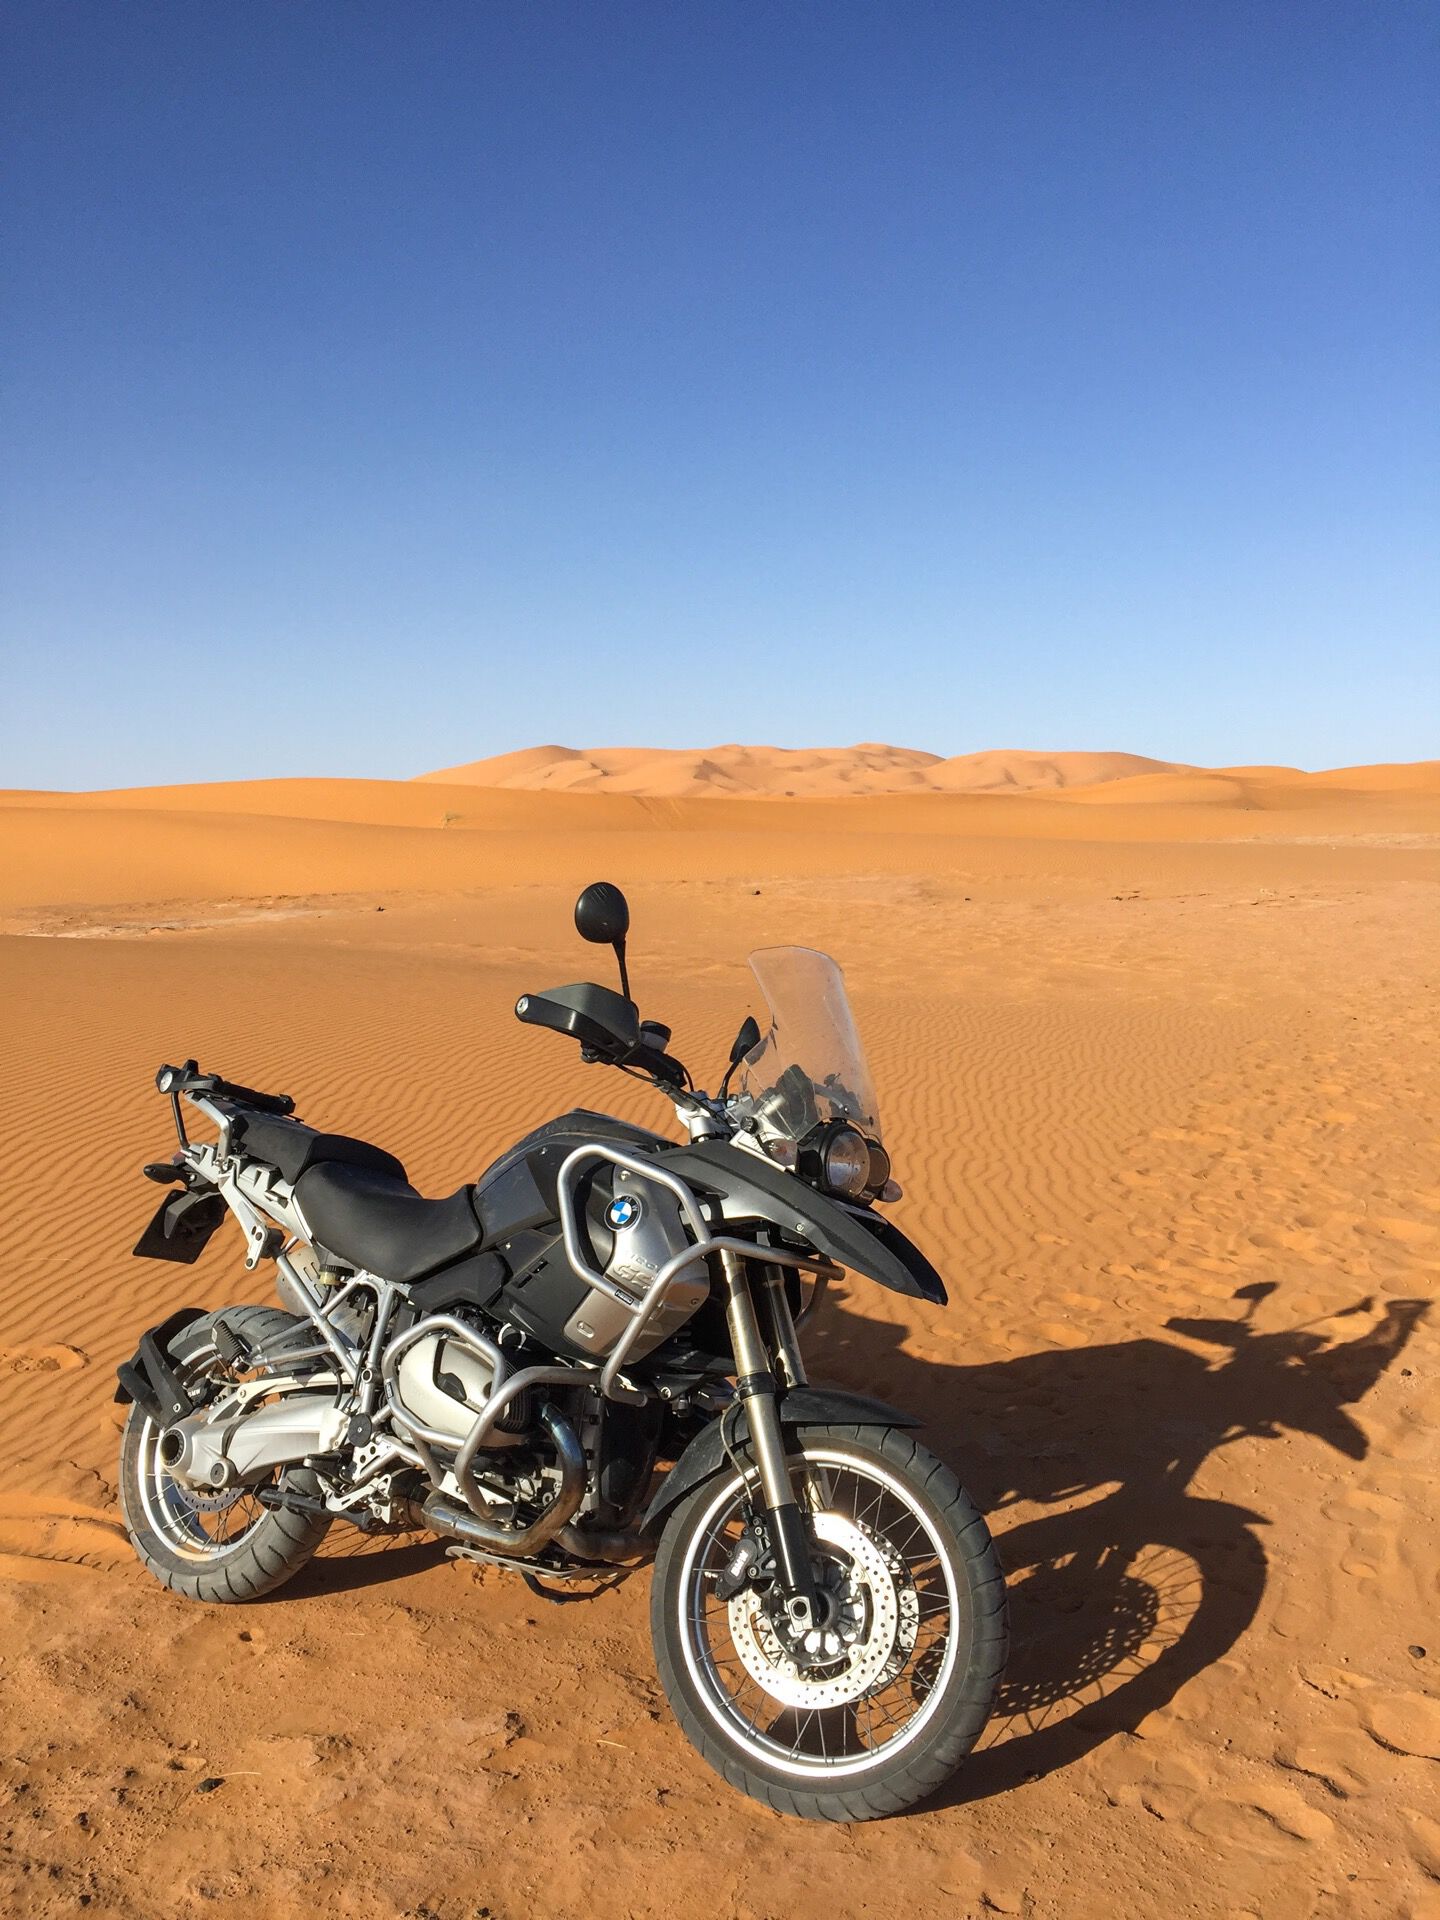 BMW R1200GS deserto Sahara Marocco